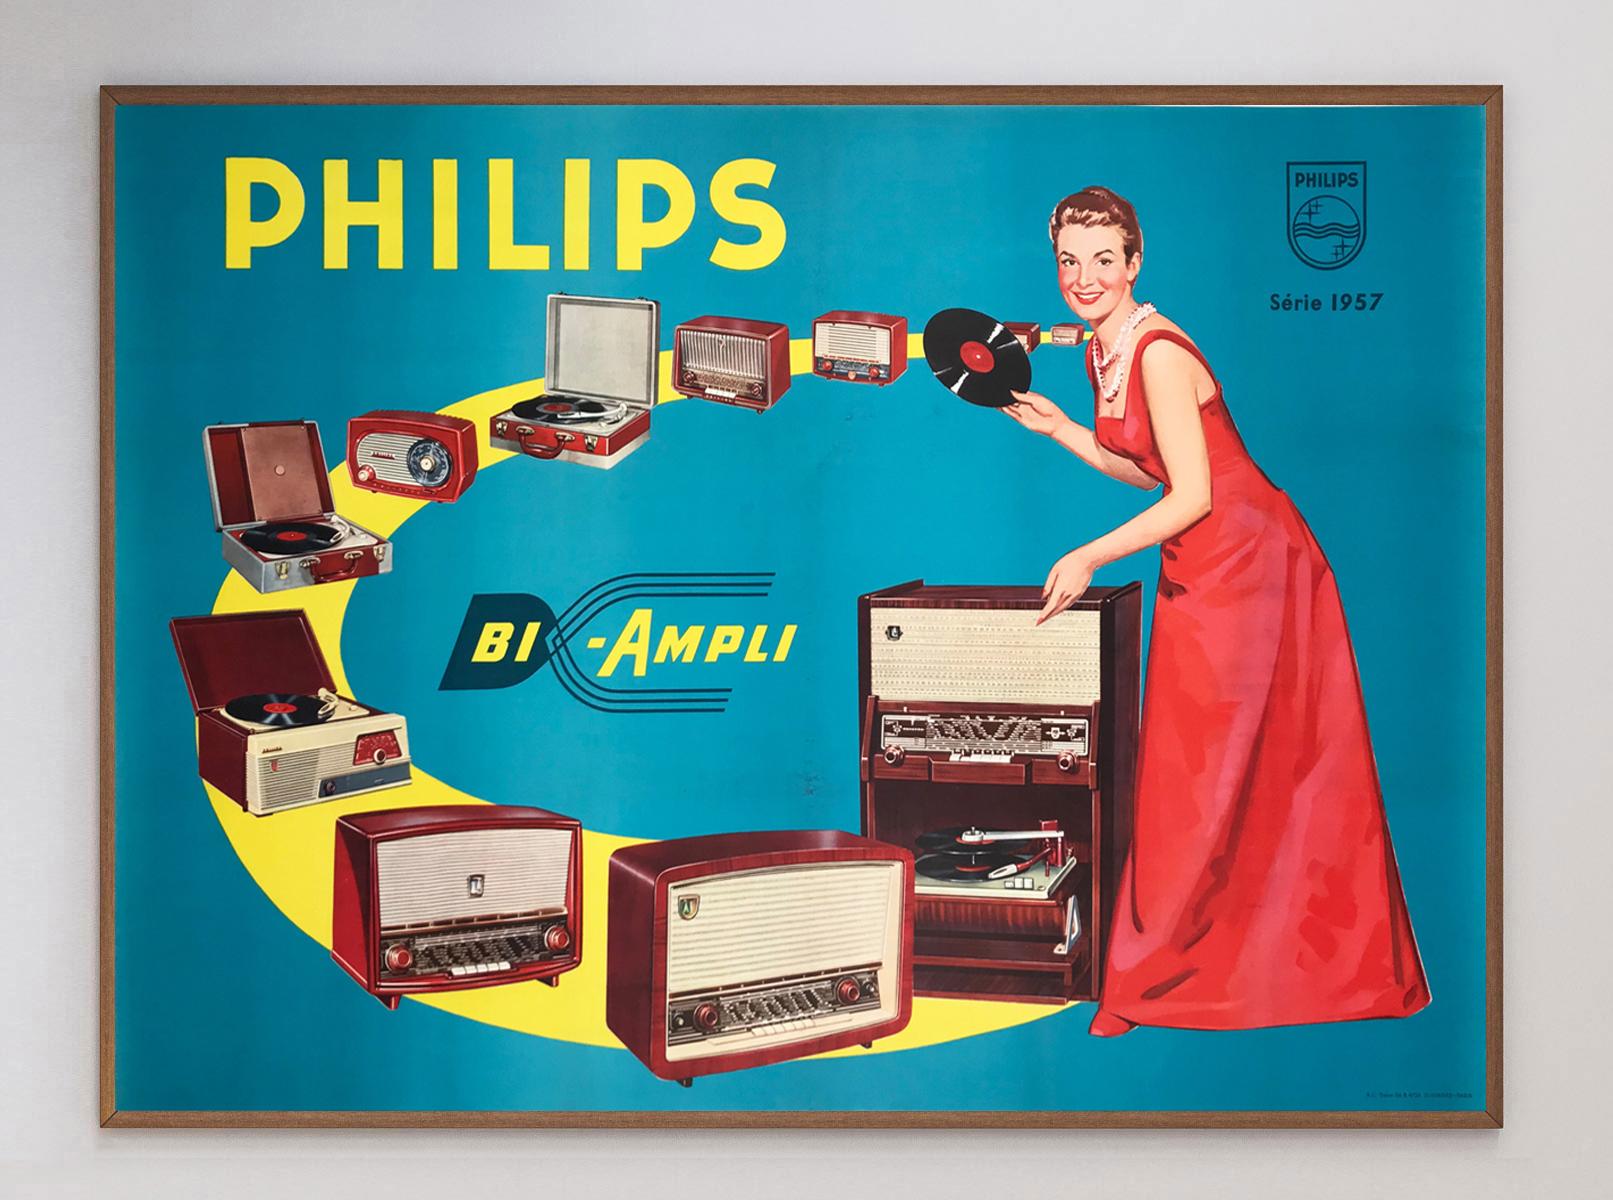 Merveilleuse et charmante affiche pour la marque d'électronique néerlandaise Philips. Fondée en 1891, Philips a été l'une des plus grandes marques d'électronique au Royaume-Uni et poursuit ses activités aujourd'hui, en se concentrant sur les